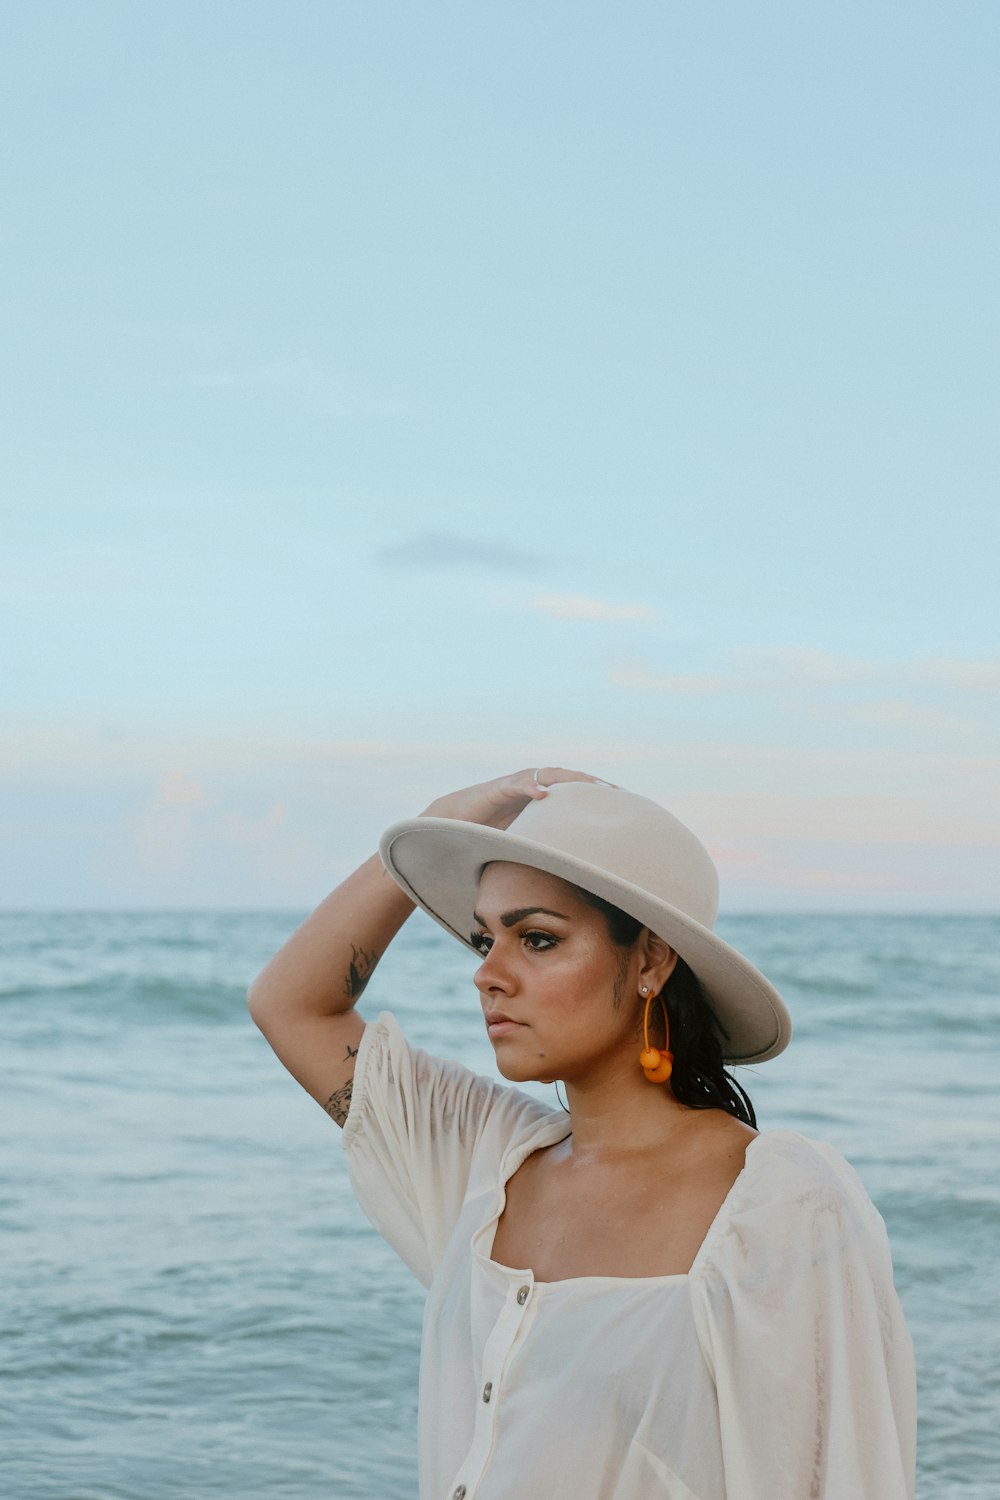 해변에 서 있는 모자를 쓴 여자